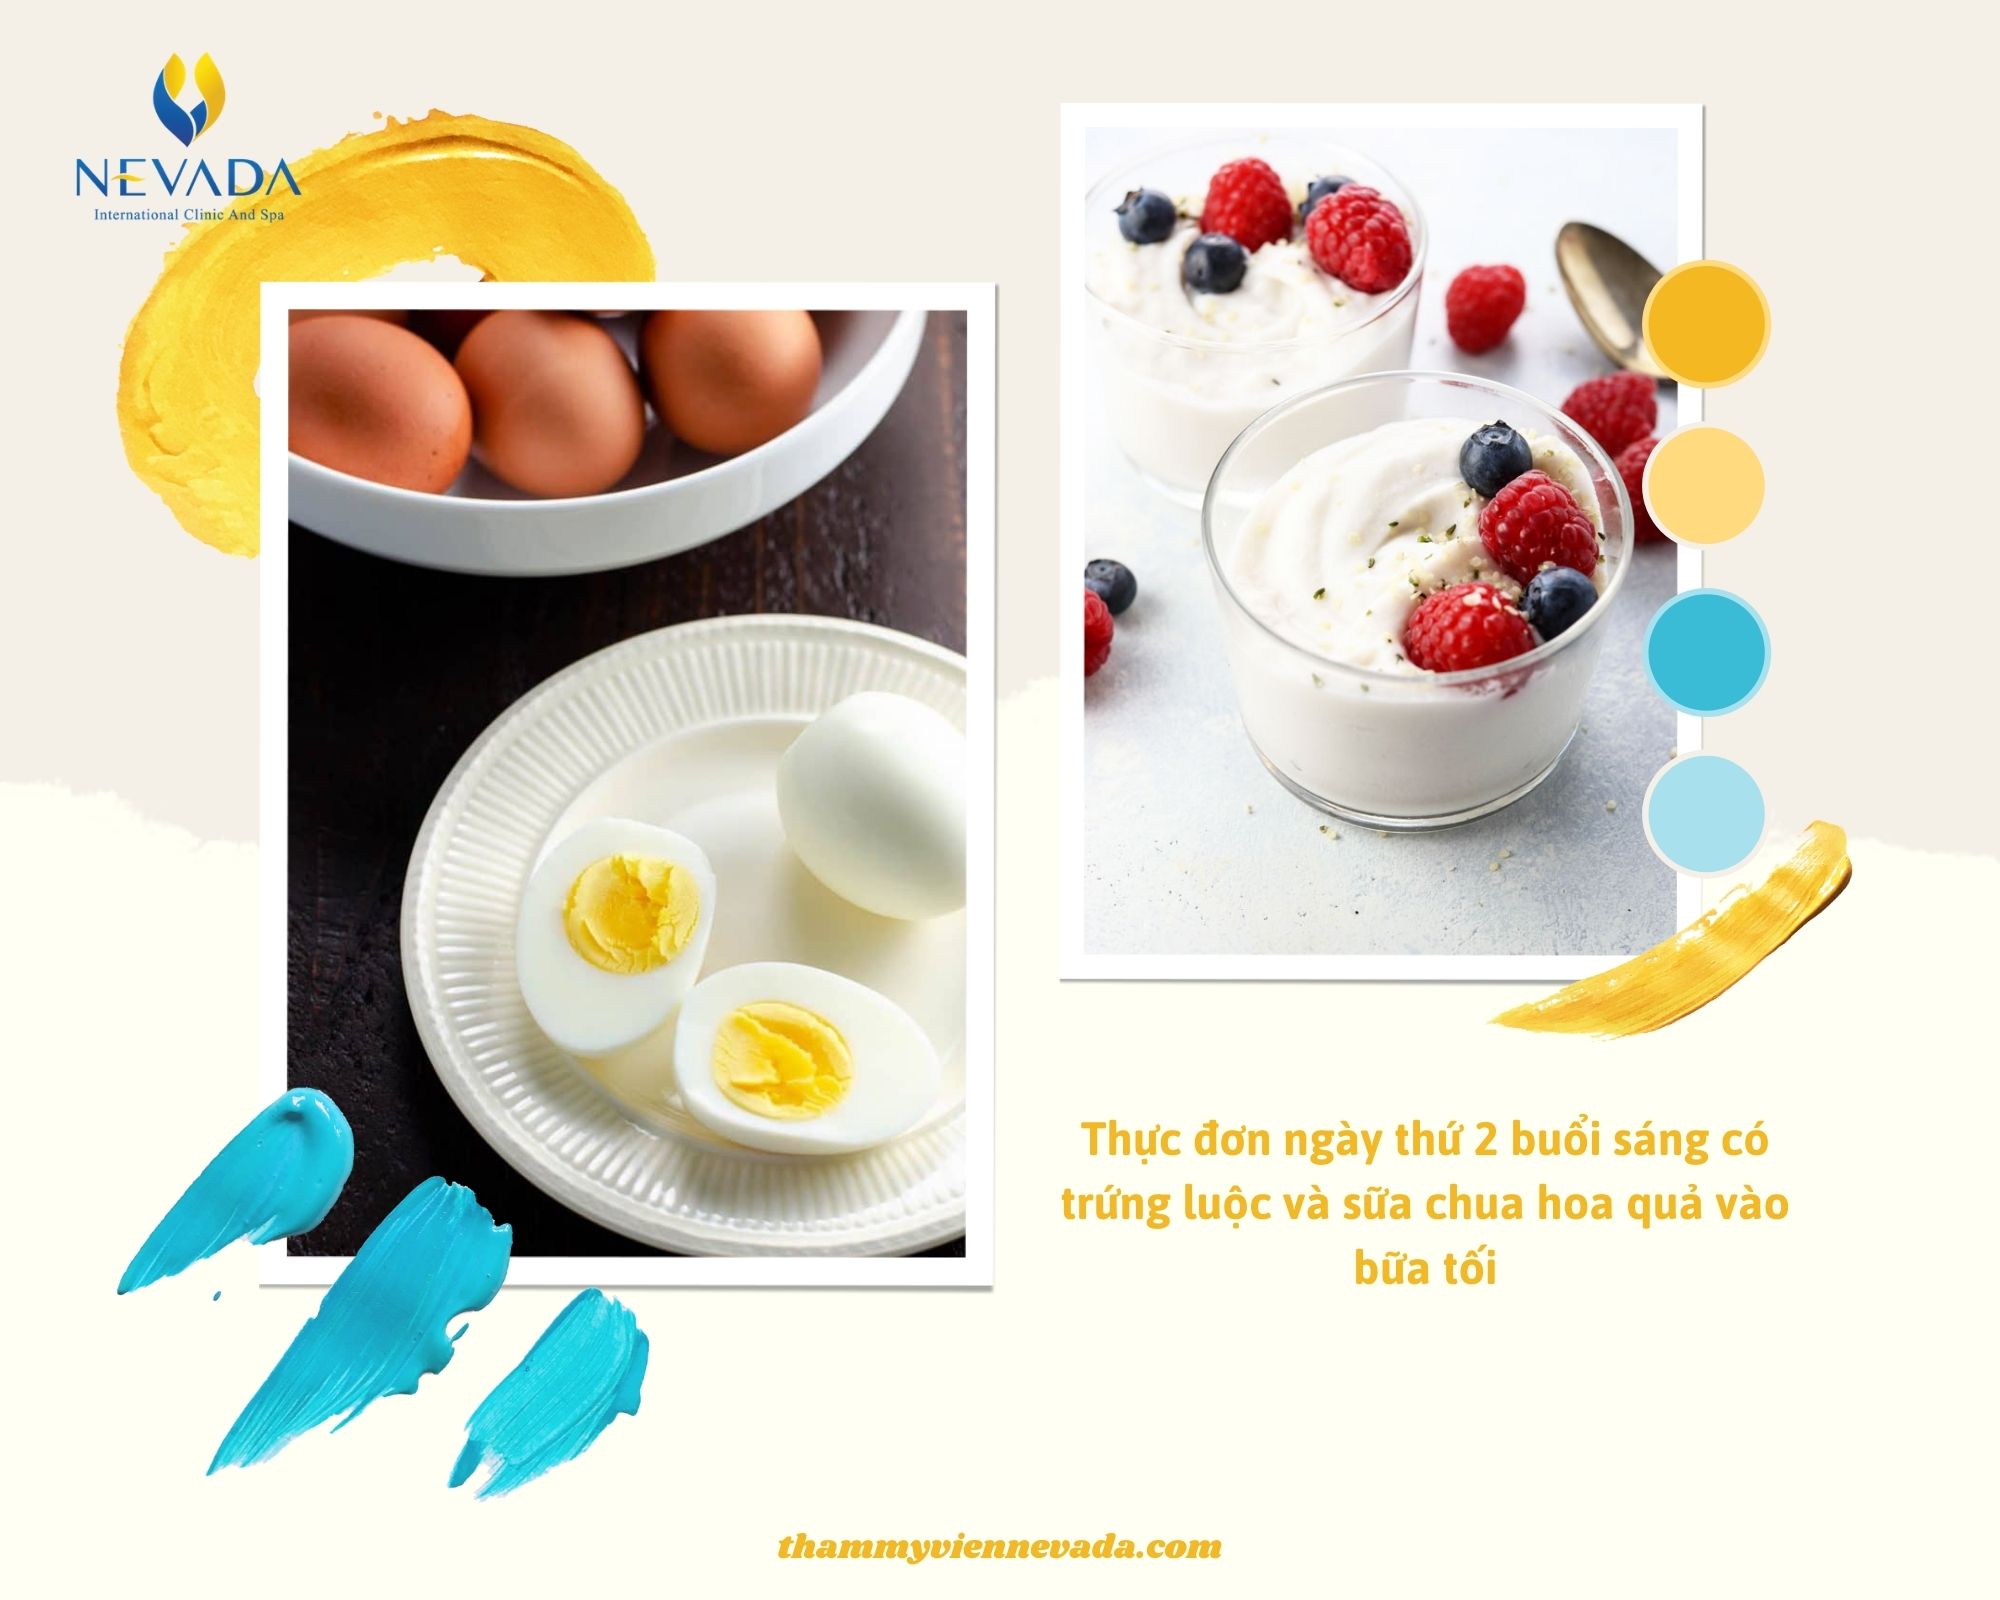 giảm cân bằng trứng và sữa chua, giảm cân với trứng và sữa, giảm cân với trứng và sữa chua, thực đơn giảm cân với trứng và sữa, thực đơn giảm cân với trứng và sữa chua